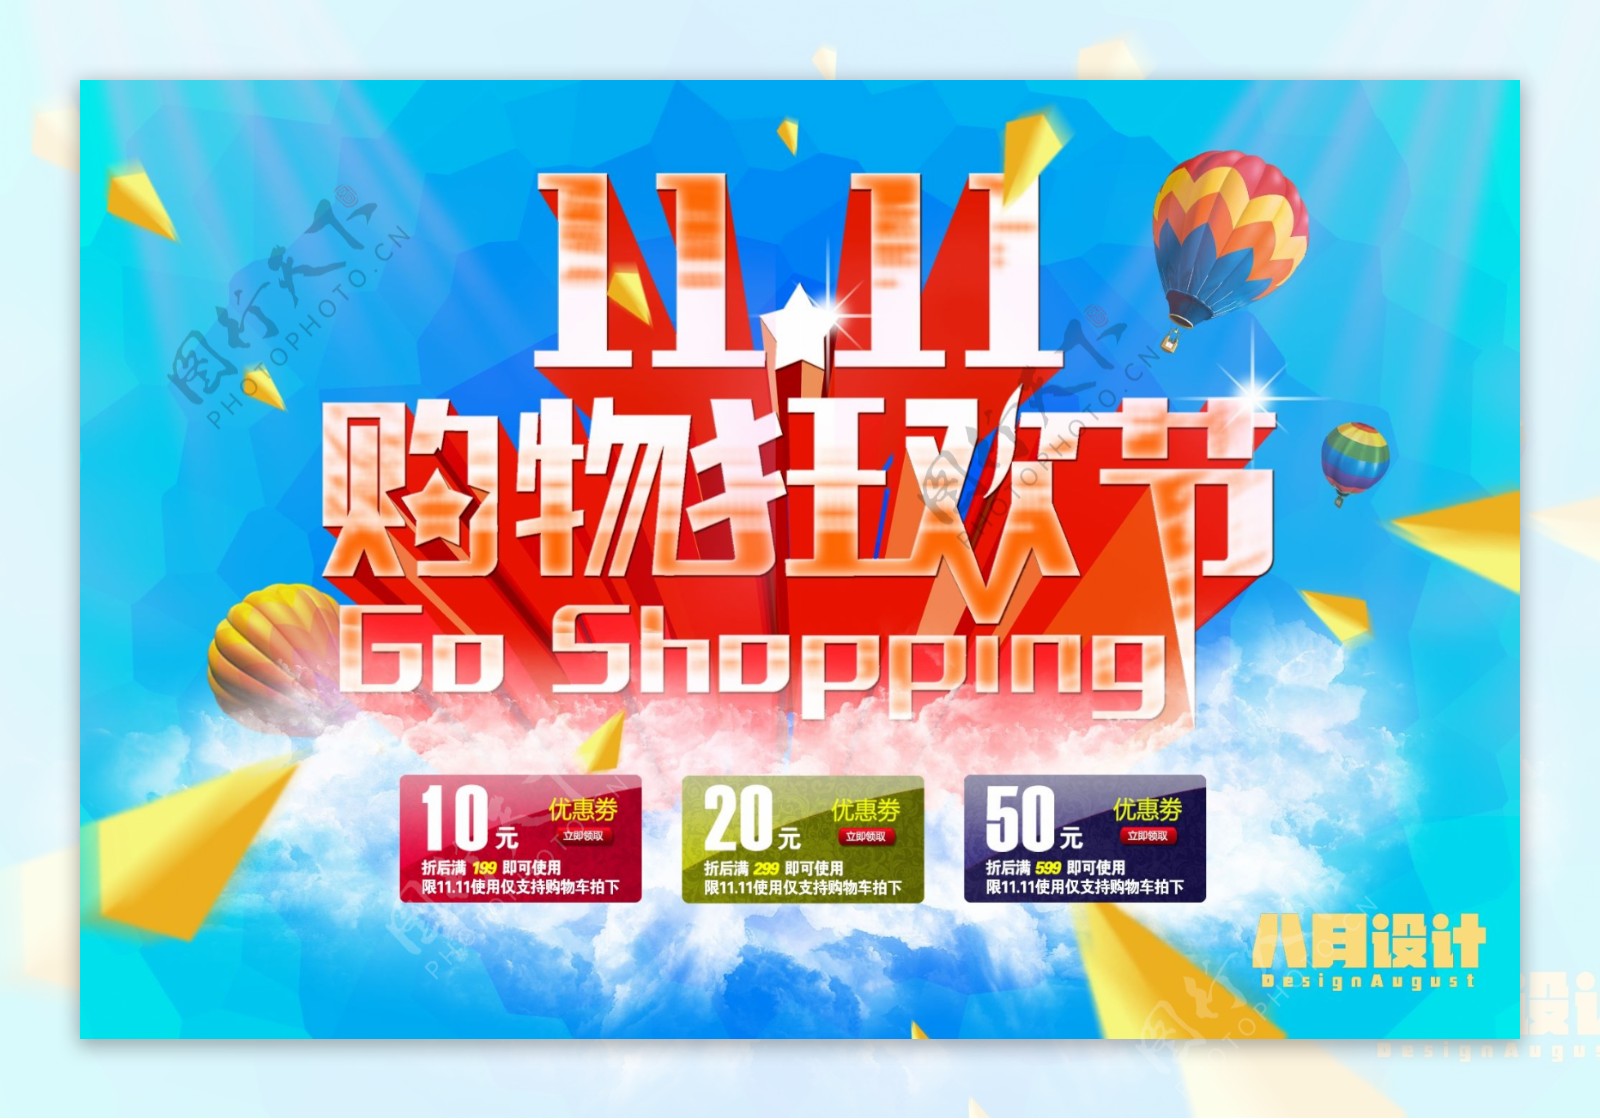 双11购物狂欢节促销海报PSD源文件